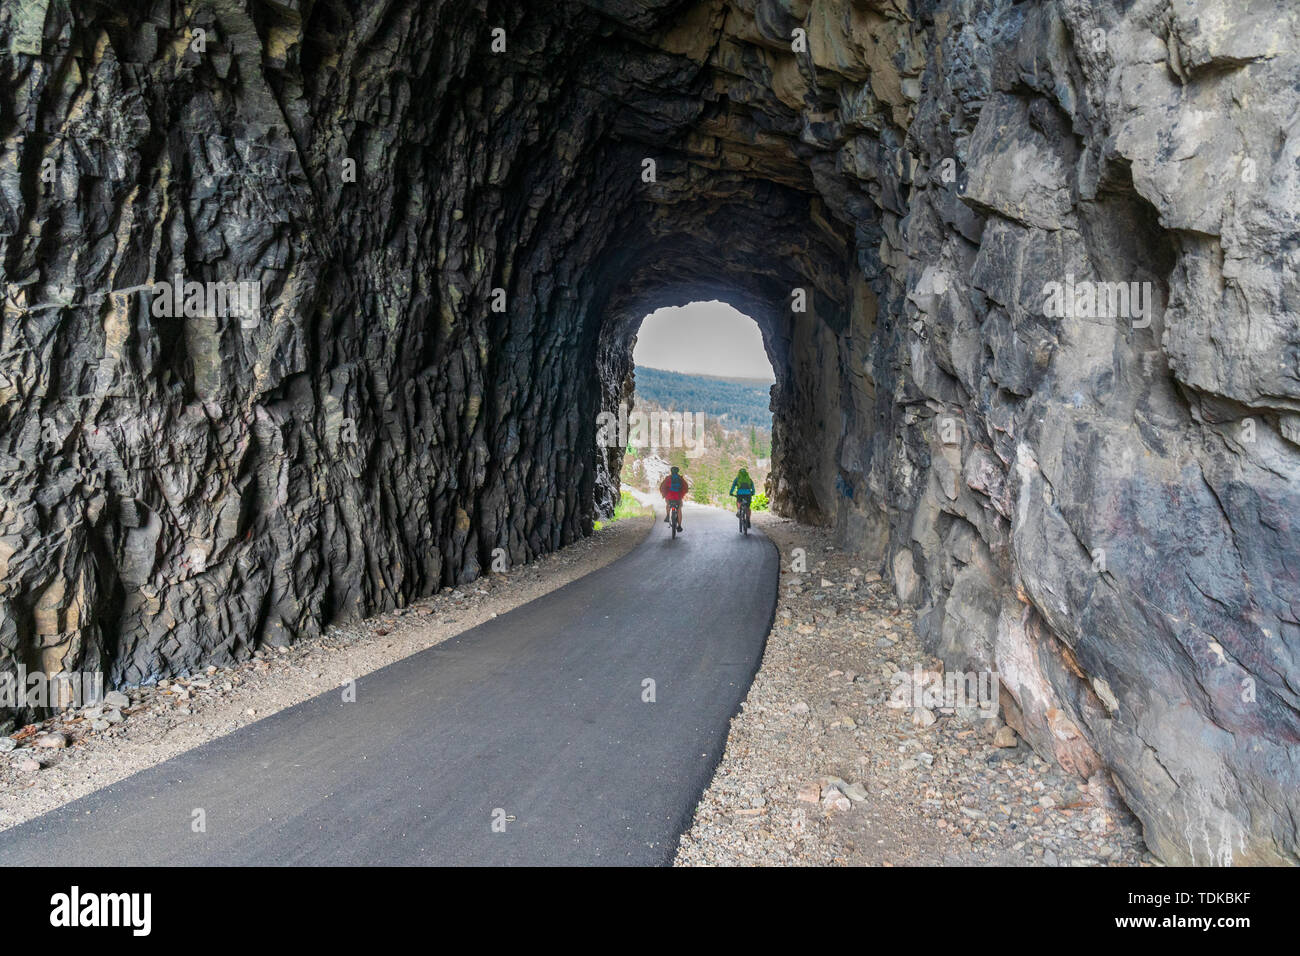 Paar Radfahren in einem der Tunnel der Kettle Valley Railway (KVR) eine verlassene Eisenbahn zu einem Wander-/Radweg umgewandelt. Stockfoto